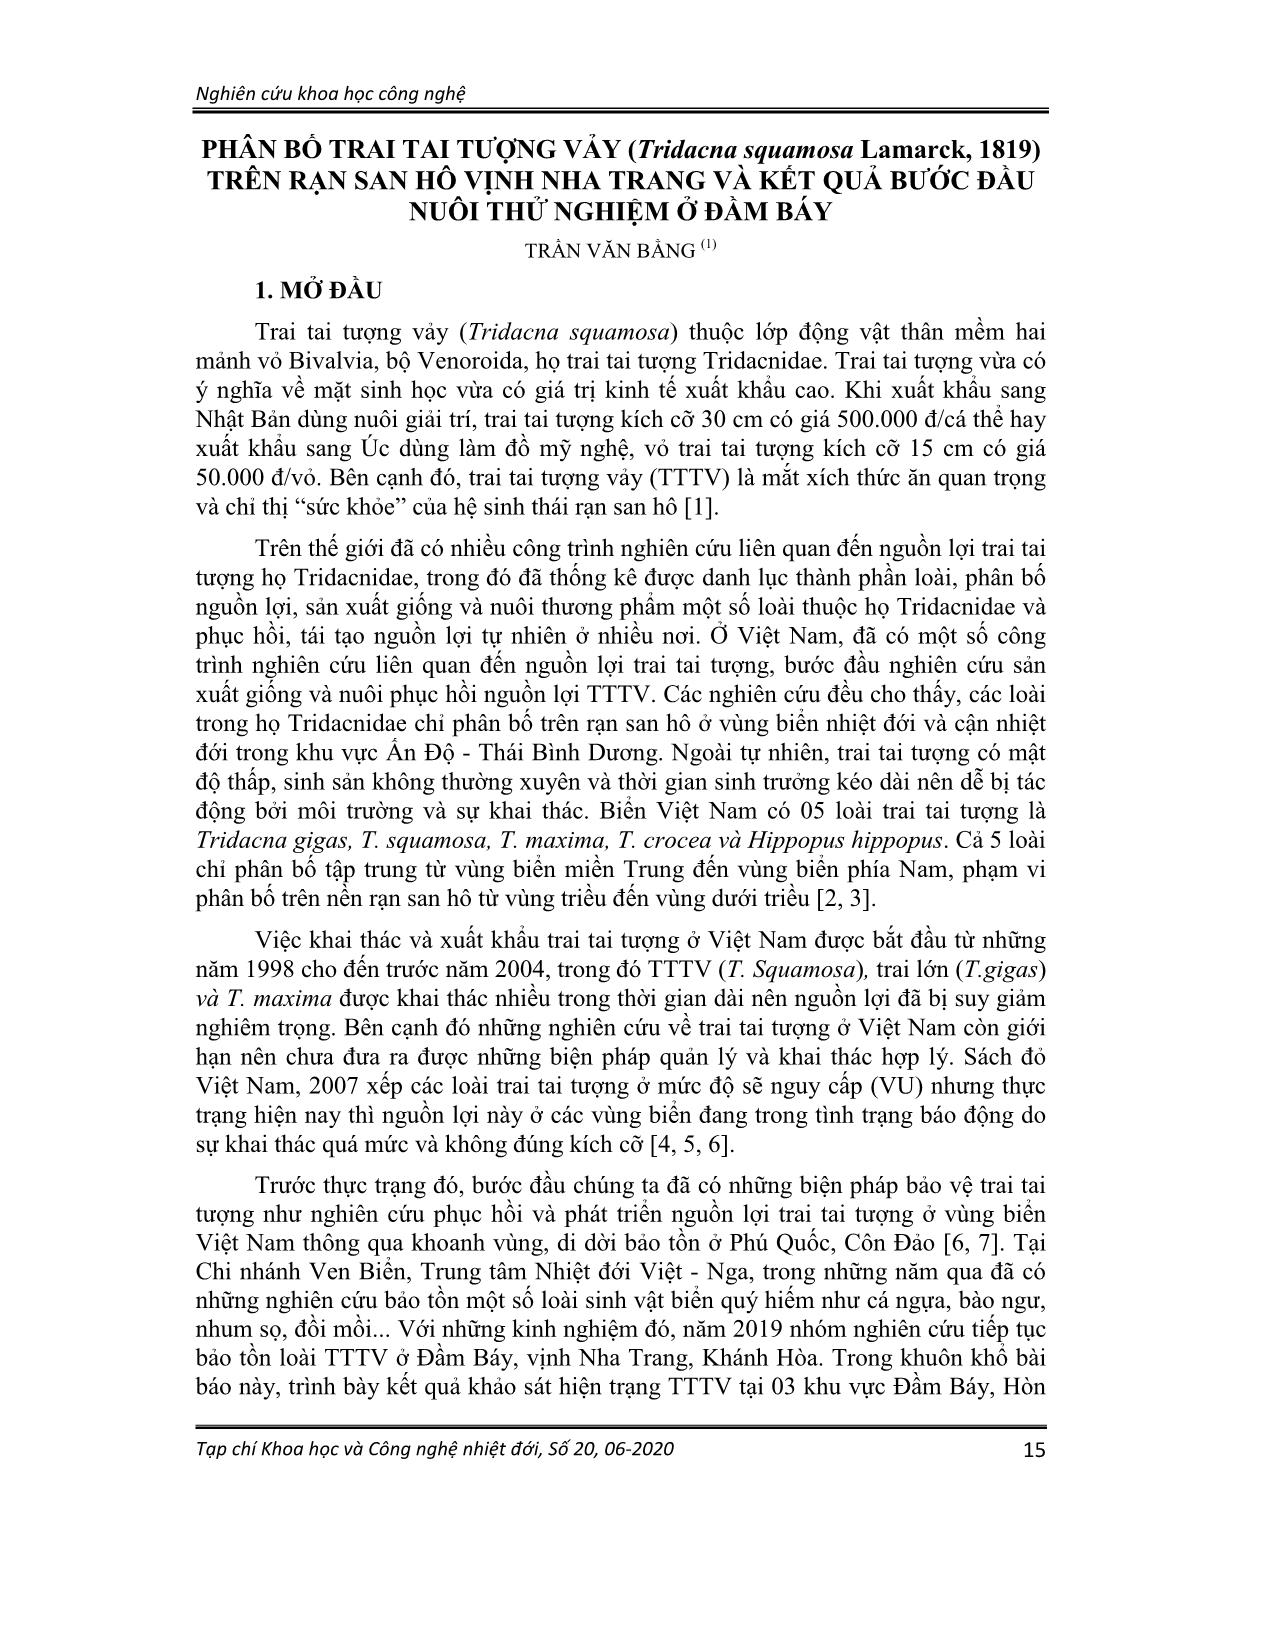 Phân bố trai tai tượng vảy (tridacna squamosa lamarck, 1819) trên rạn san hô vịnh Nha Trang và kết quả bước đầu nuôi thử nghiệm ở đầm báy trang 1